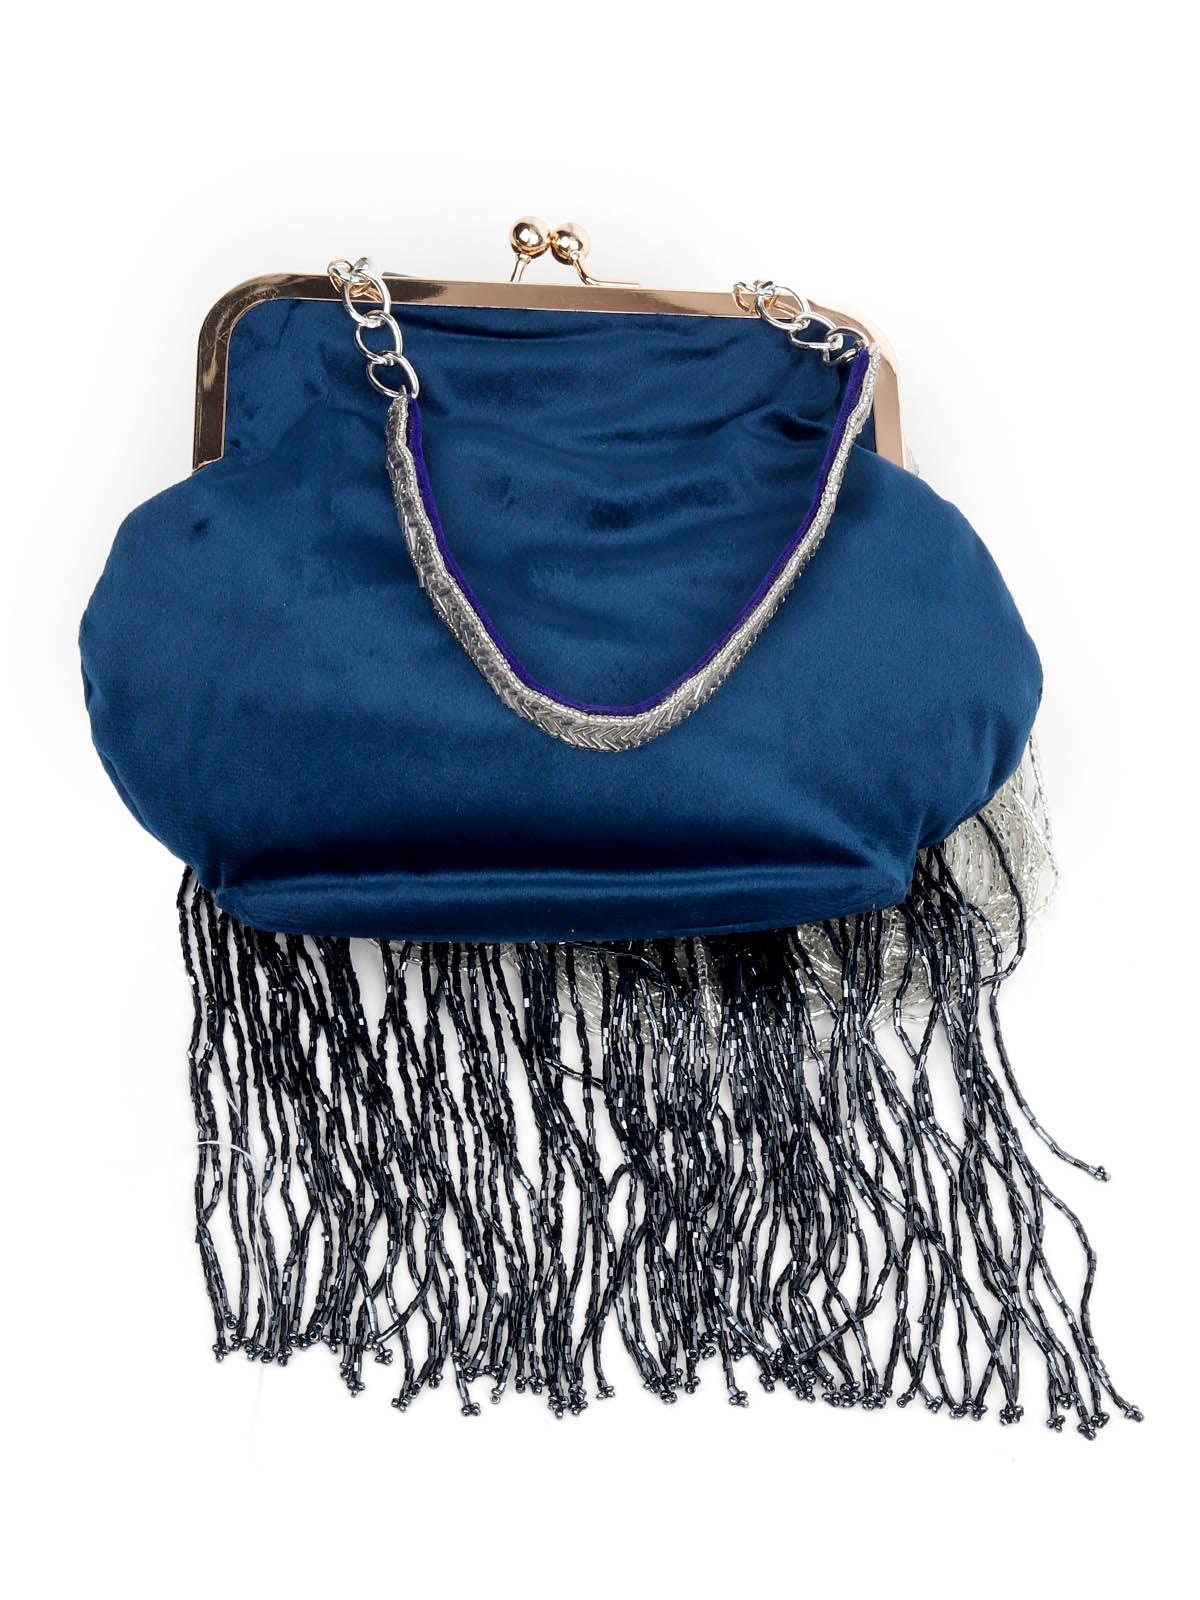 EMBELLISHED BLUE CLUTCH BAG WITH TASSELS - Odette